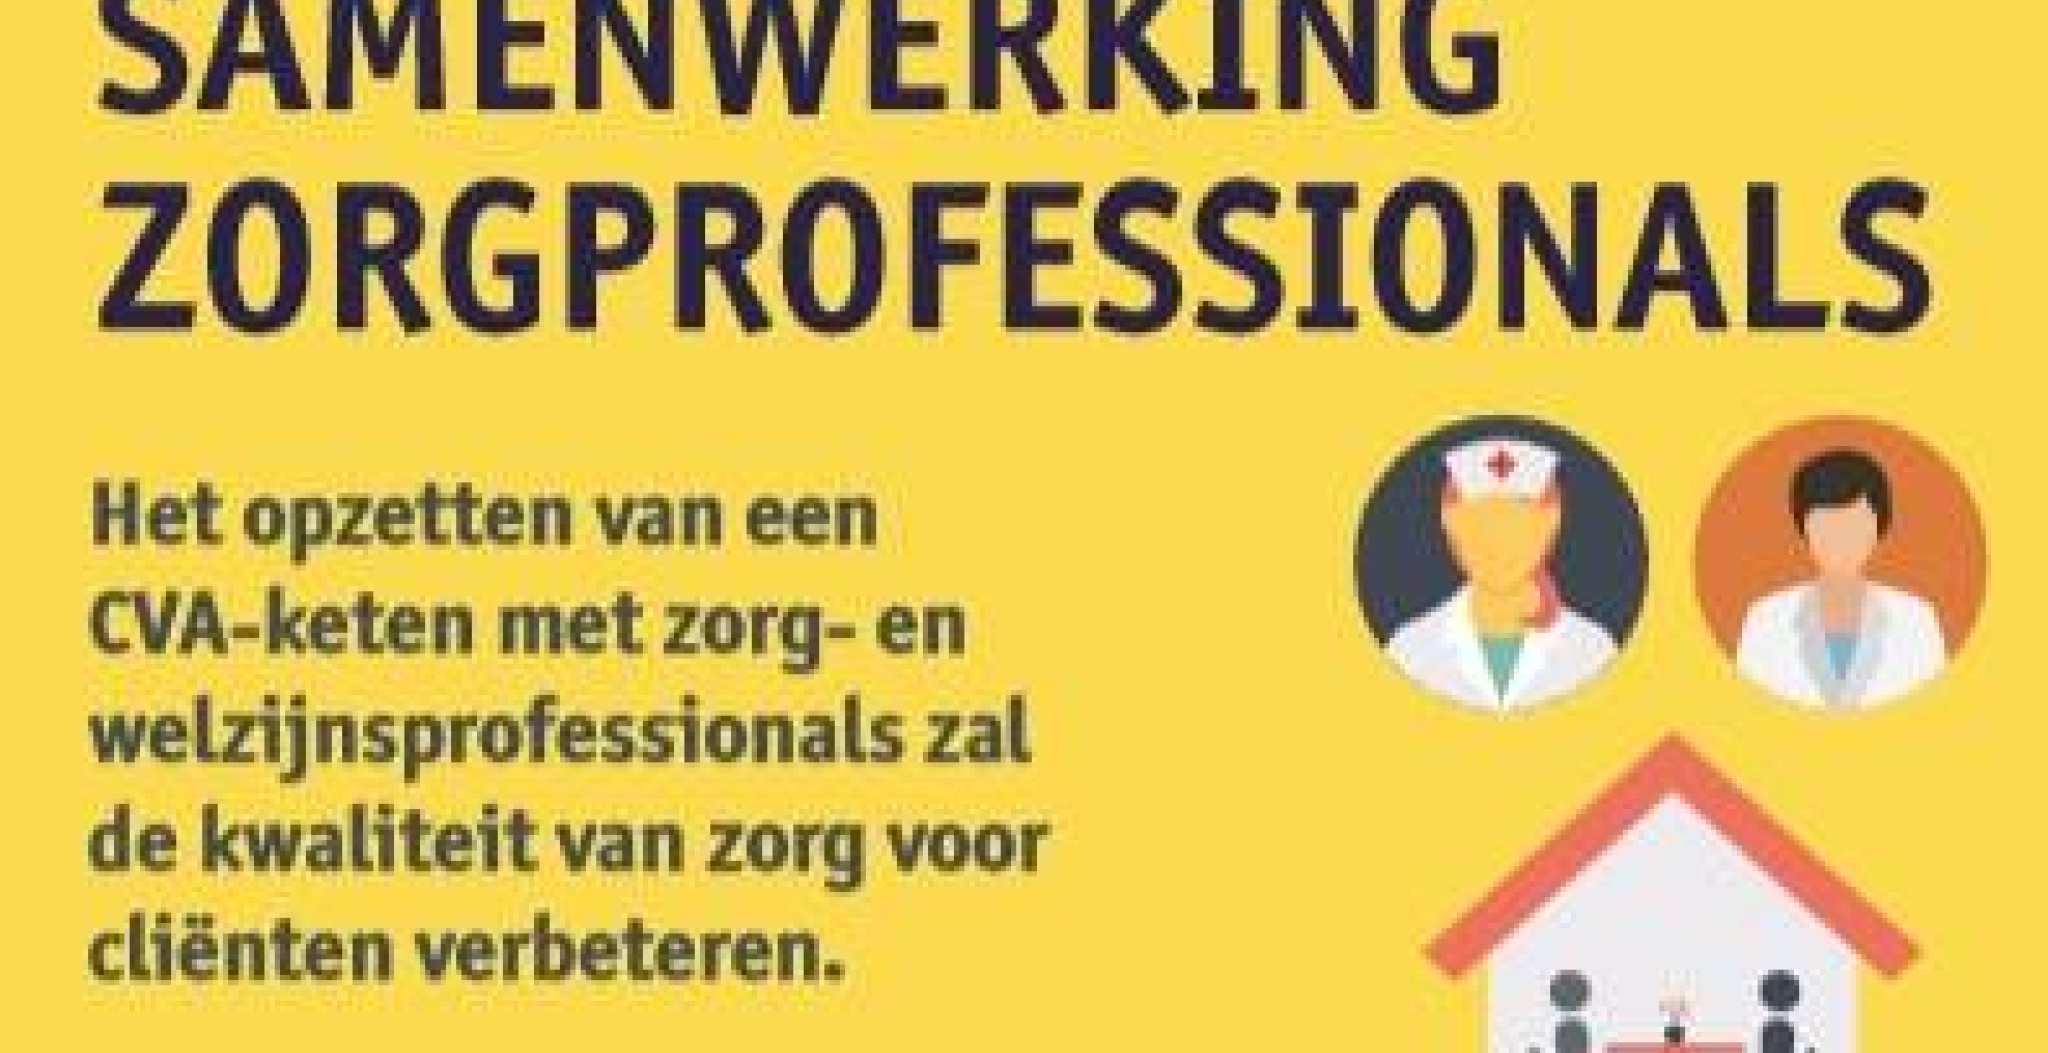 Een gele poster met samenwerking zorgprofessionals